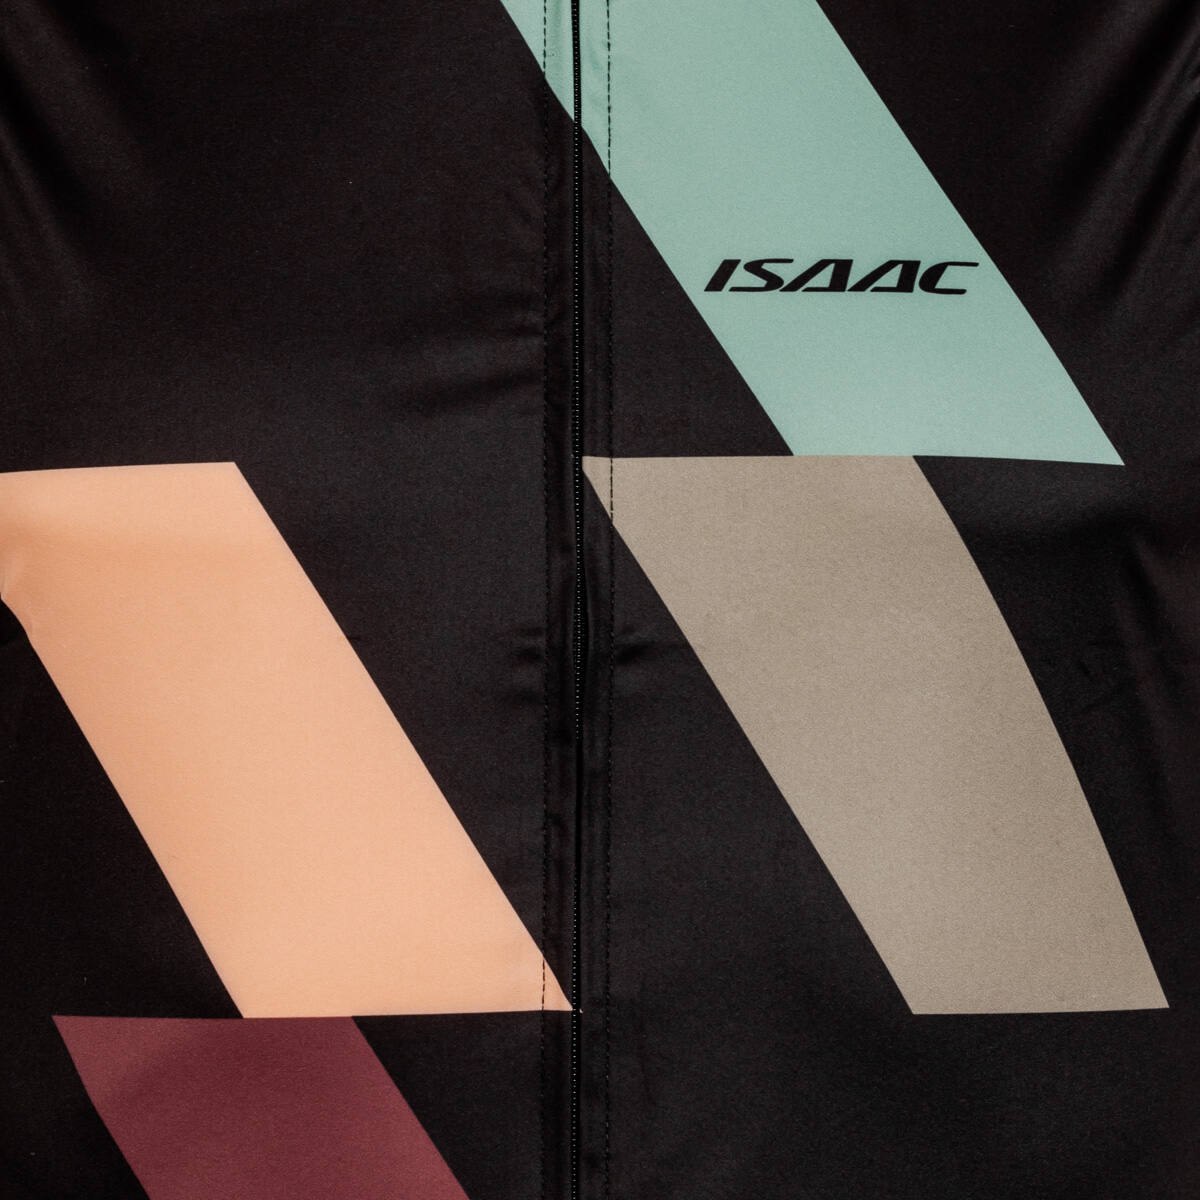 Isaac - Windjacket Teamwear maat L